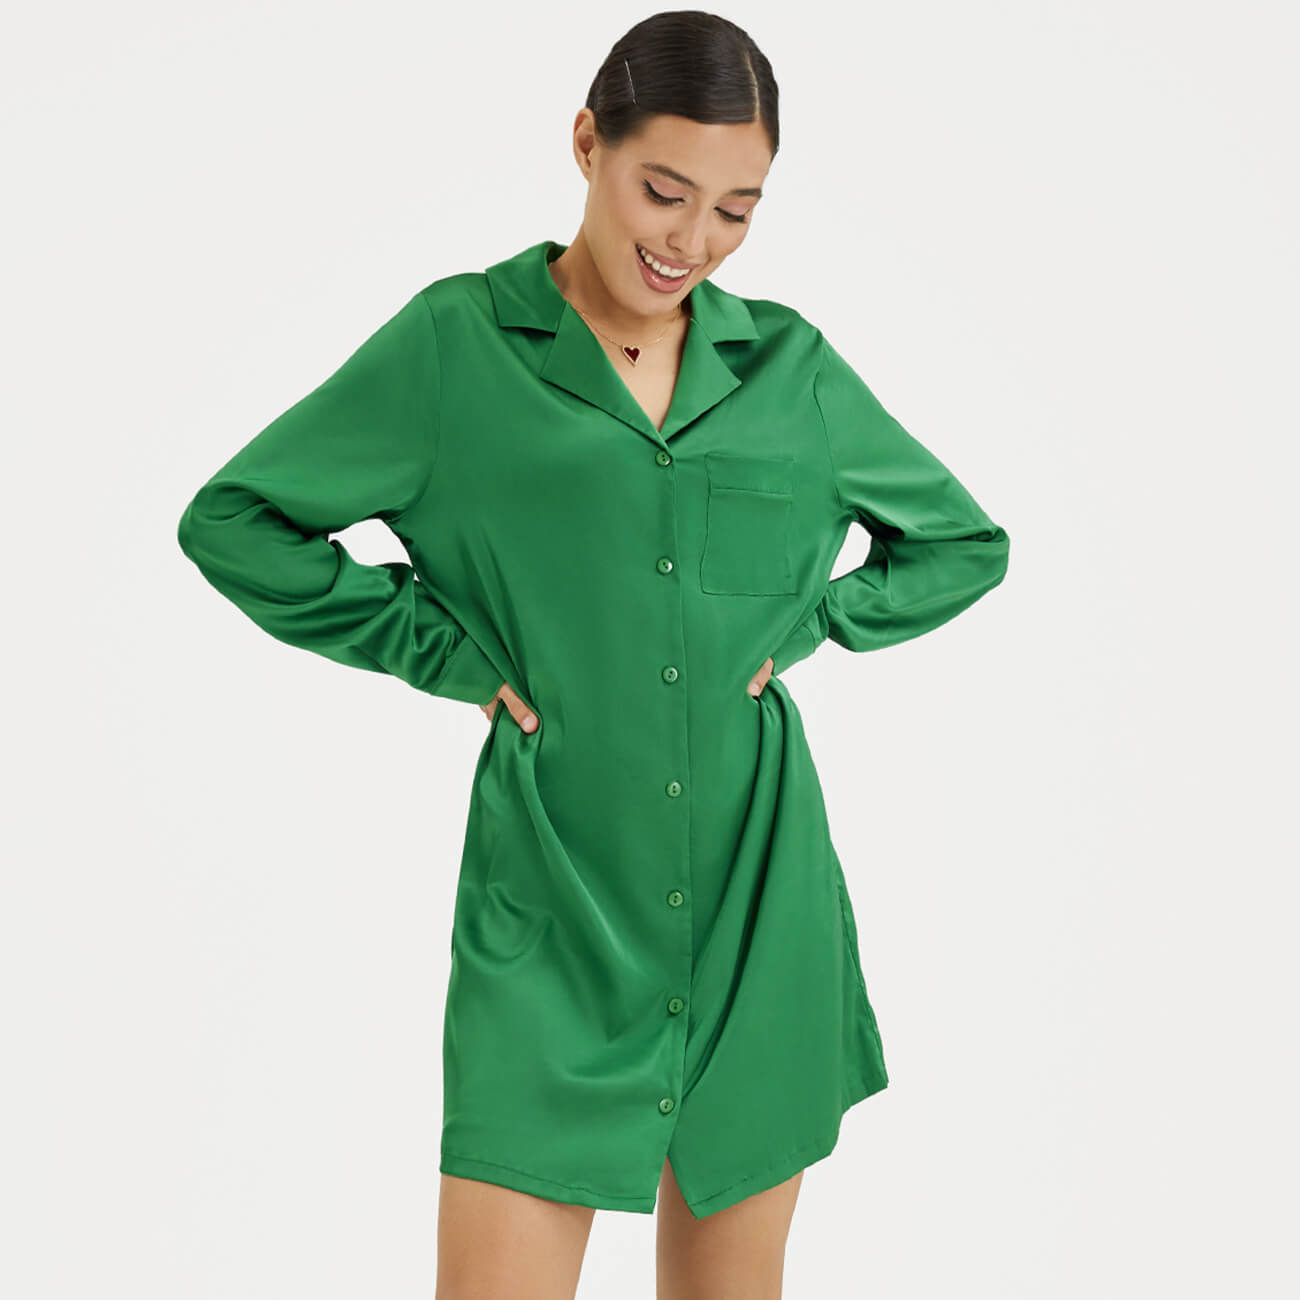 Рубашка женская, р. L, удлиненная, с длинным рукавом, полиэстер/эластан, зеленая, Madeline - фото 1